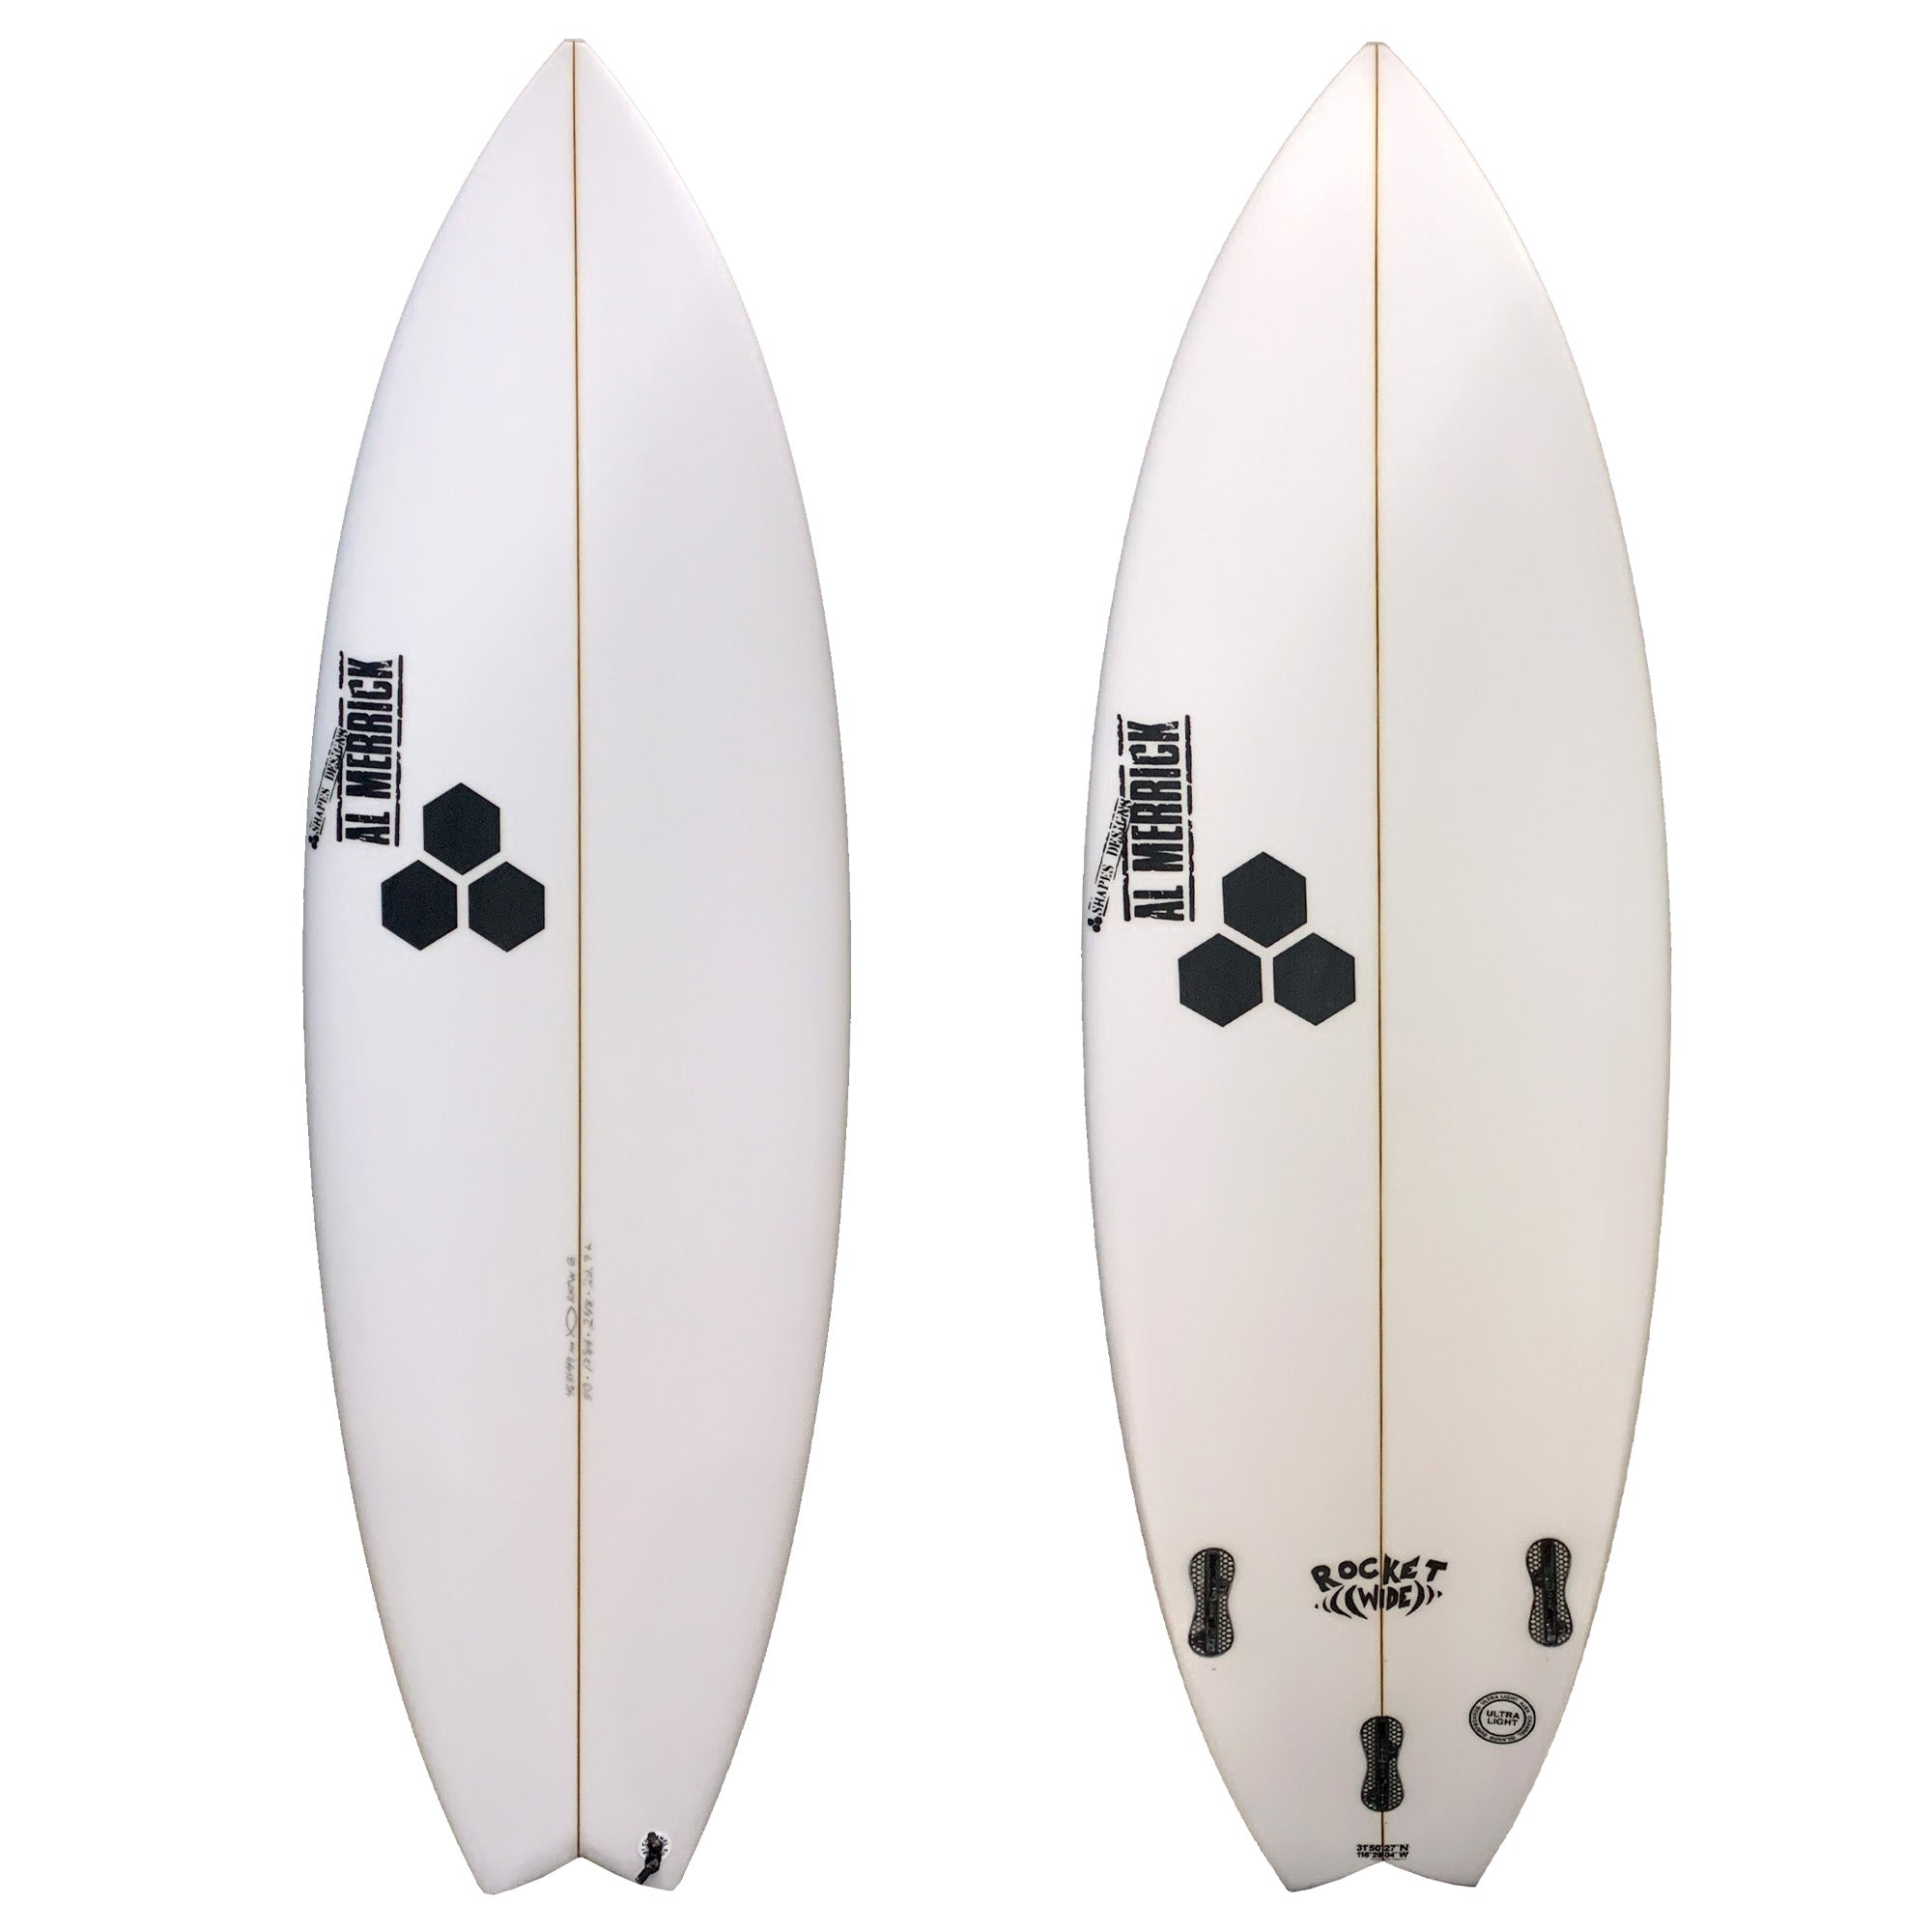 Channel Islands Rocket Wide Grom Series Surfboard - FCS II